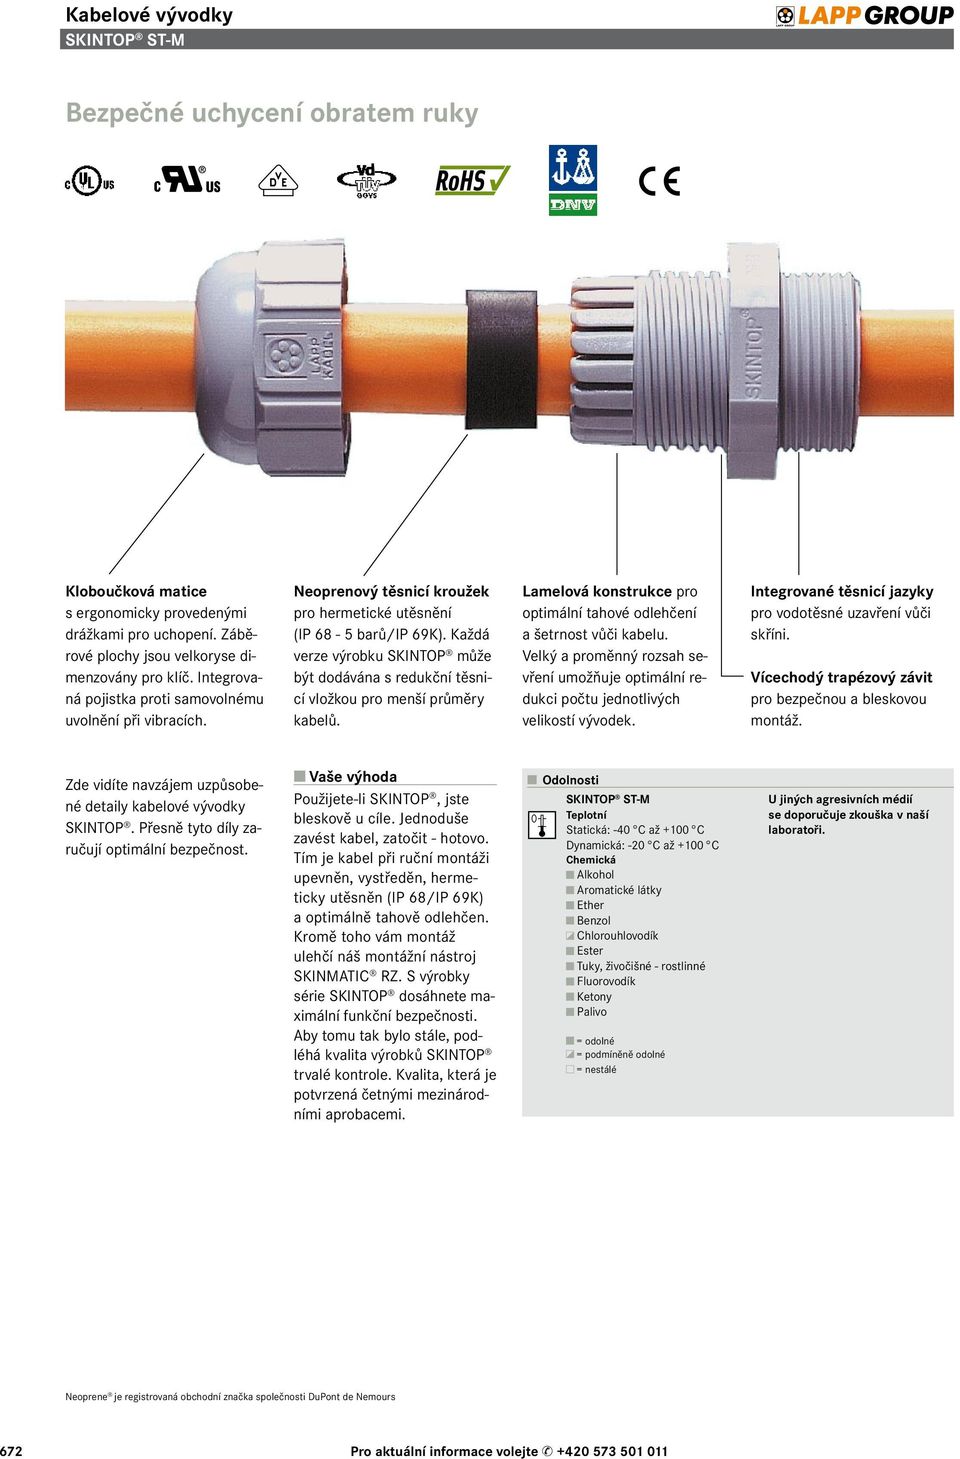 Každá verze výrobku SKINTOP může být dodávána s redukční těsnicí vložkou pro menší průměry kabelů. Lamelová konstrukce pro optimální tahové odlehčení a šetrnost vůči kabelu.